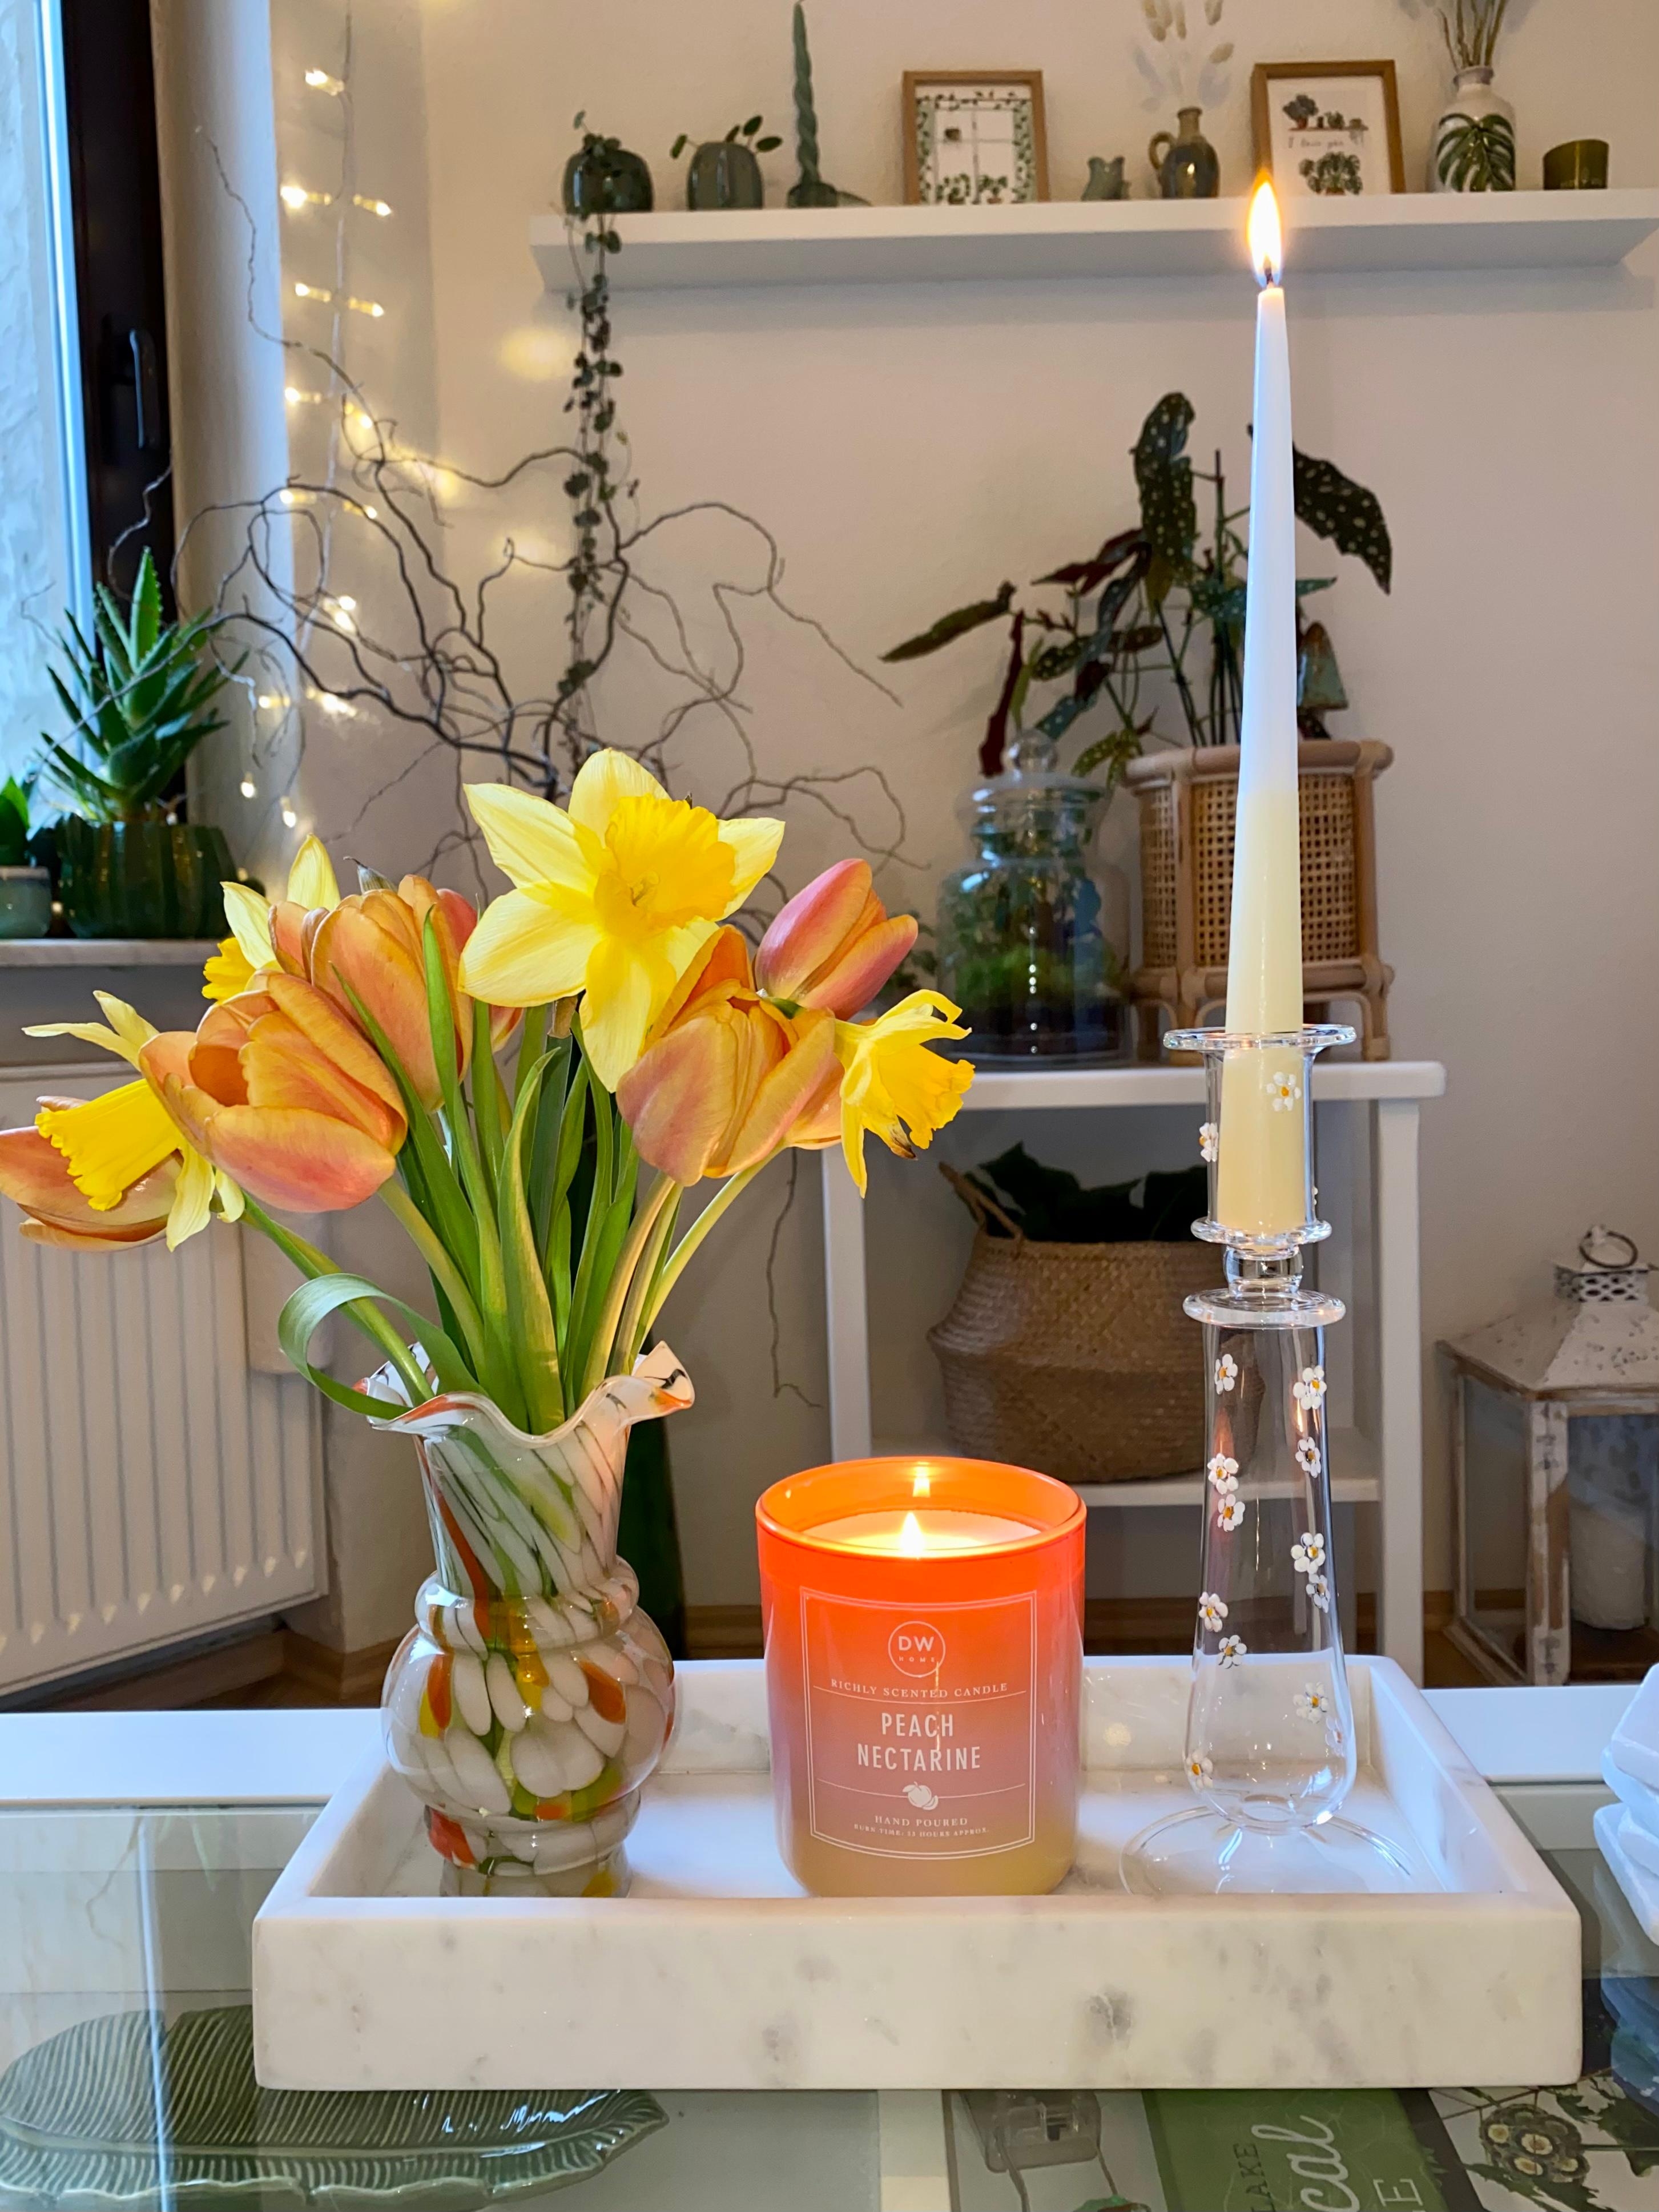 Tulpen & Narzissen 🌼 
#blumen #kerzen #kerzenständer #deko #cozyhome #gemütlich #dekoration #wohnzimmer #springvibes